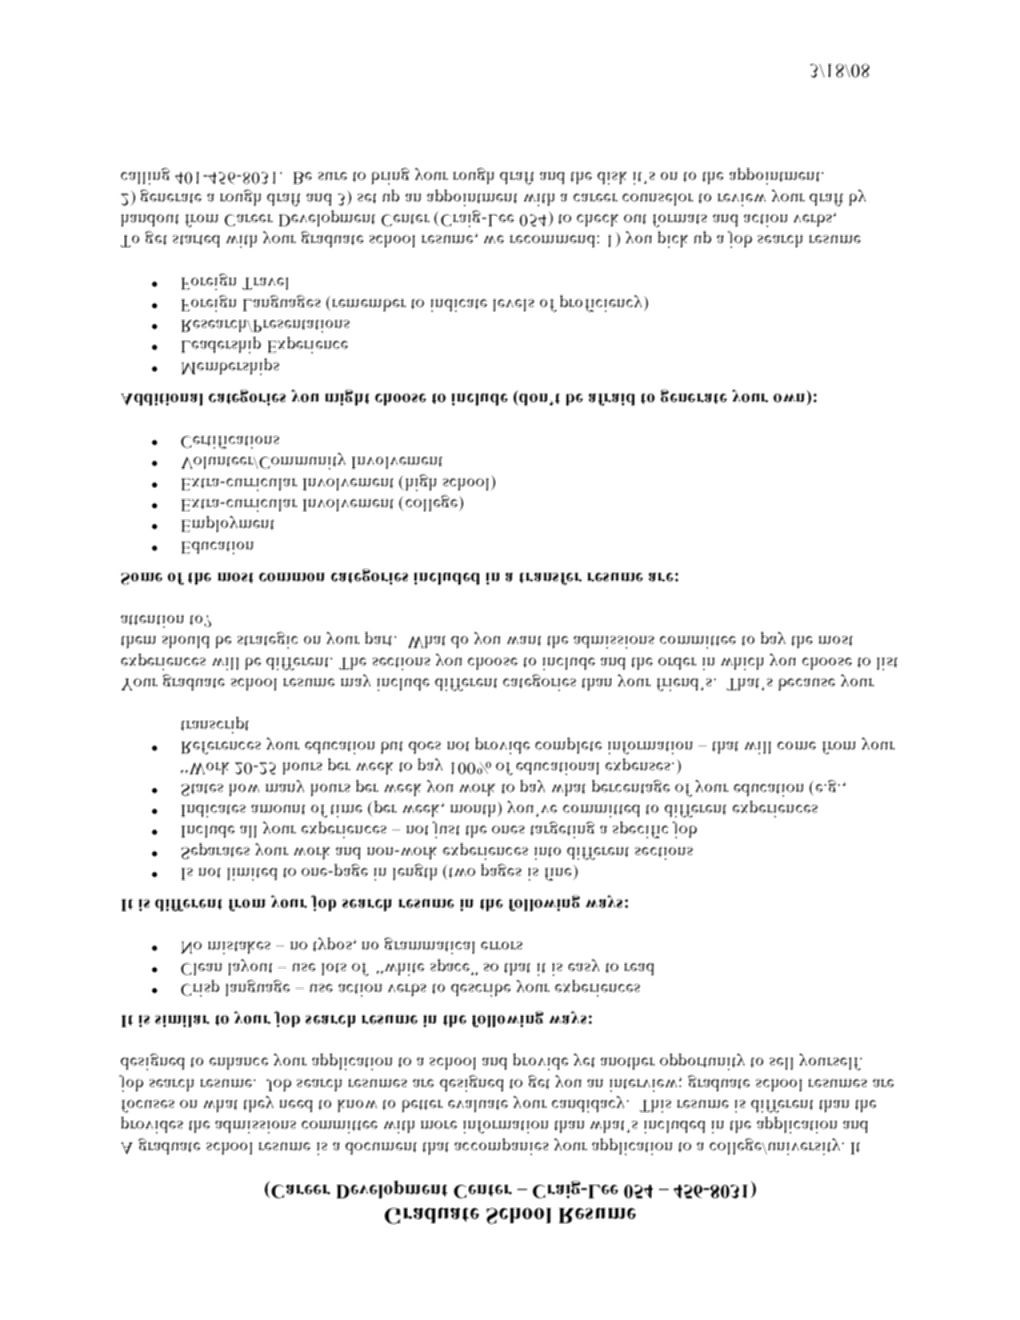 comprehensive resume sample for nurses